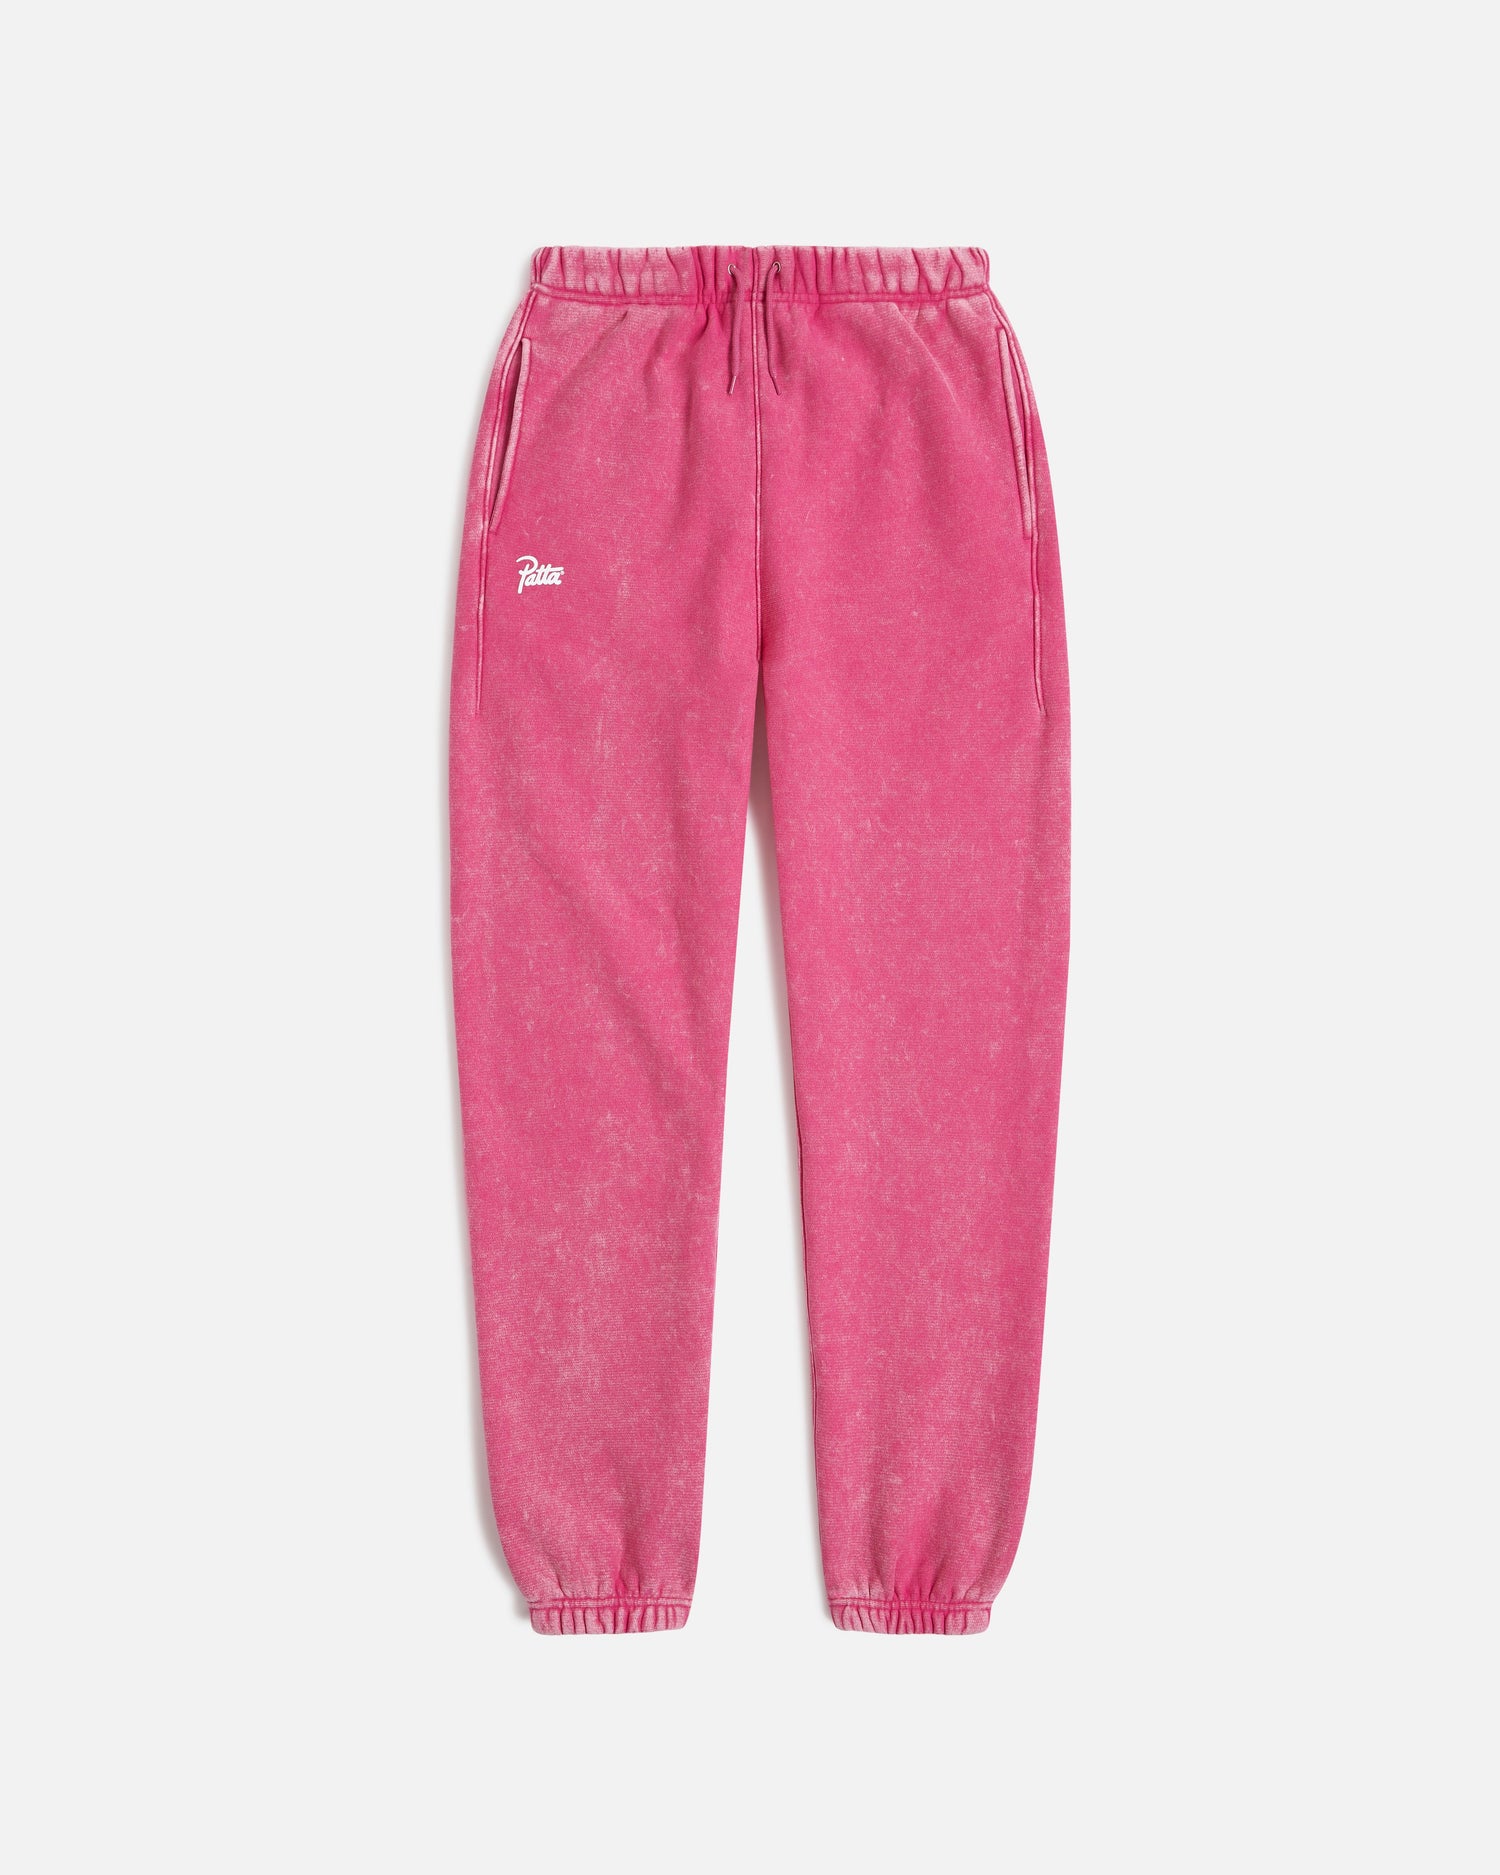 Pantaloni da jogging Patta Classic Washed (rosso fucsia)